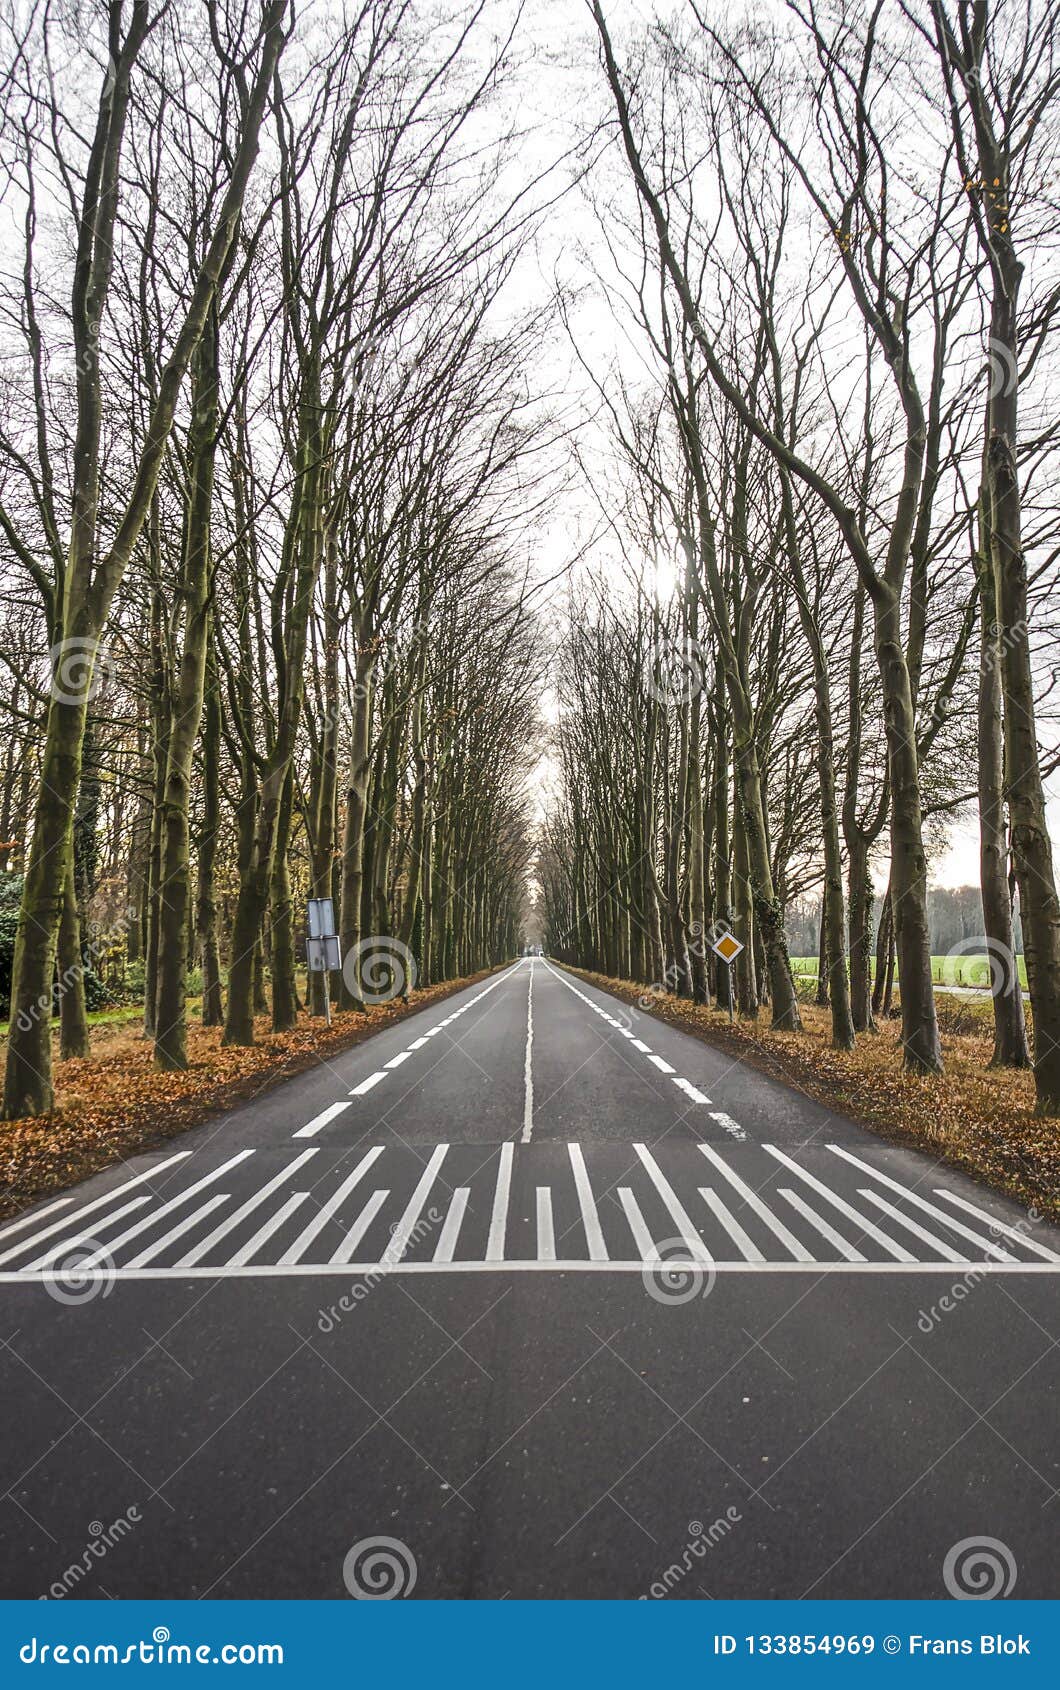 Carretera de asfalto arbolada. Imagen simétrica de una carretera de asfalto de dos calles abandonada alineada con los árboles altos cerca de Zutphen, los Países Bajos